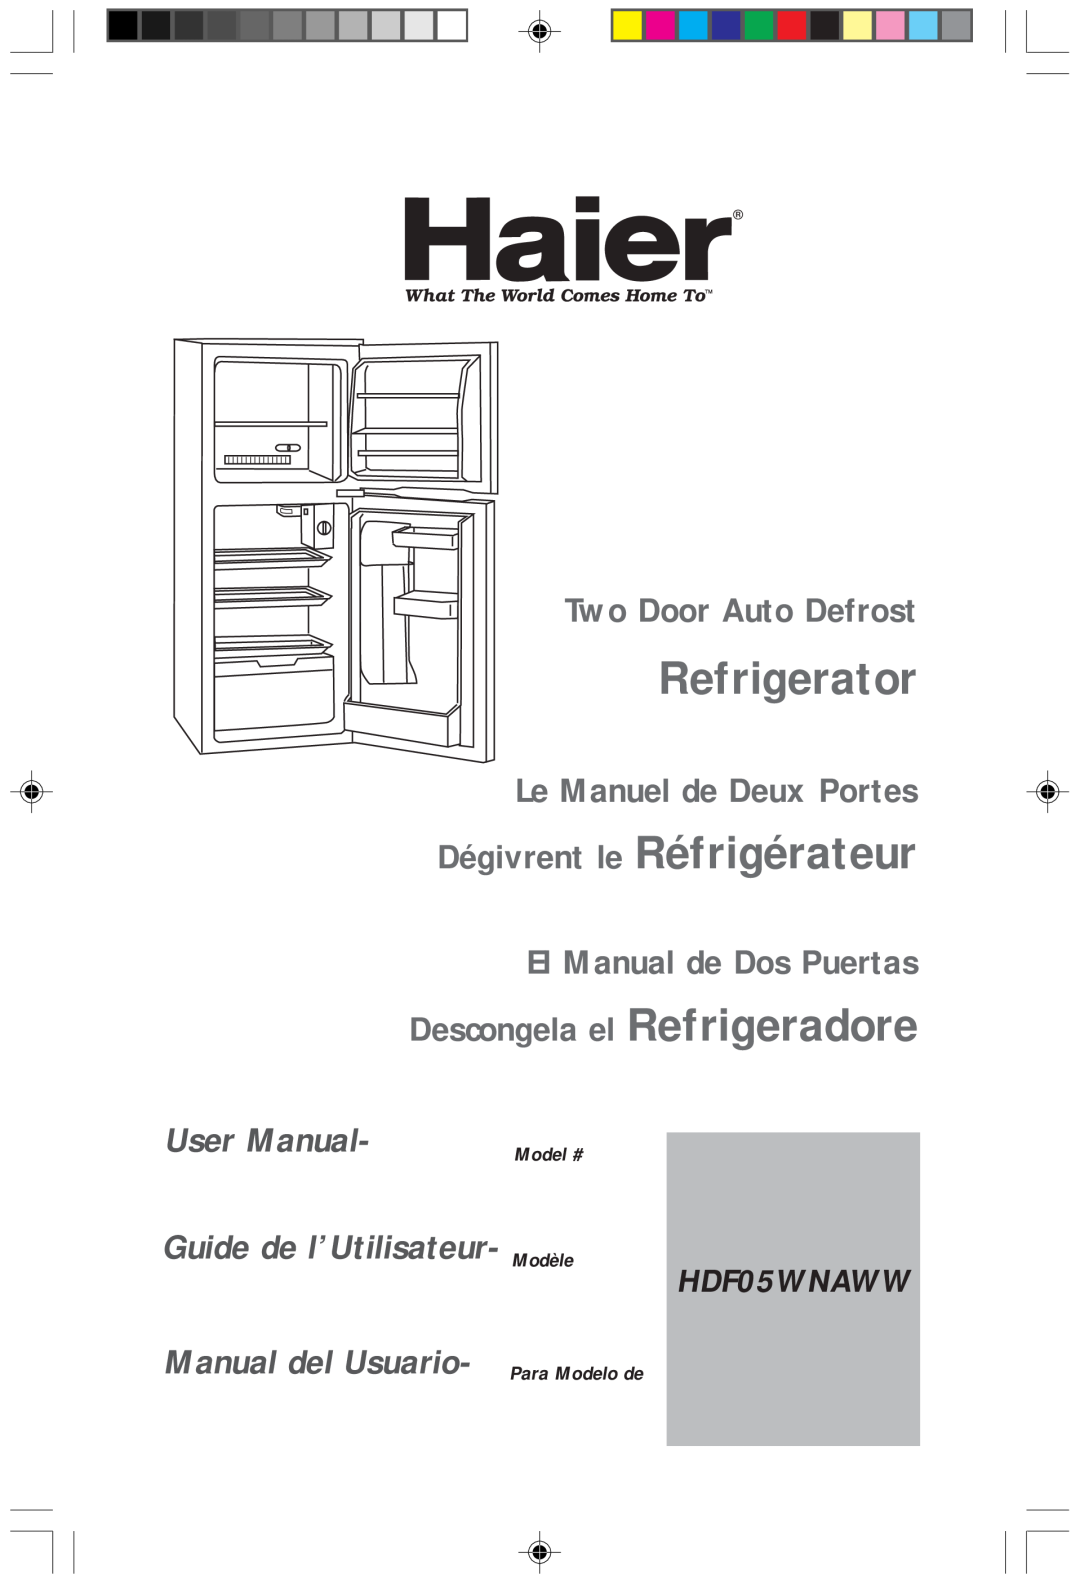 Haier HDF05WNAWW user manual Refrigerator, Two Door Auto Defrost, Le Manuel de Deux Portes Dégivrent le Réfrigérateur 